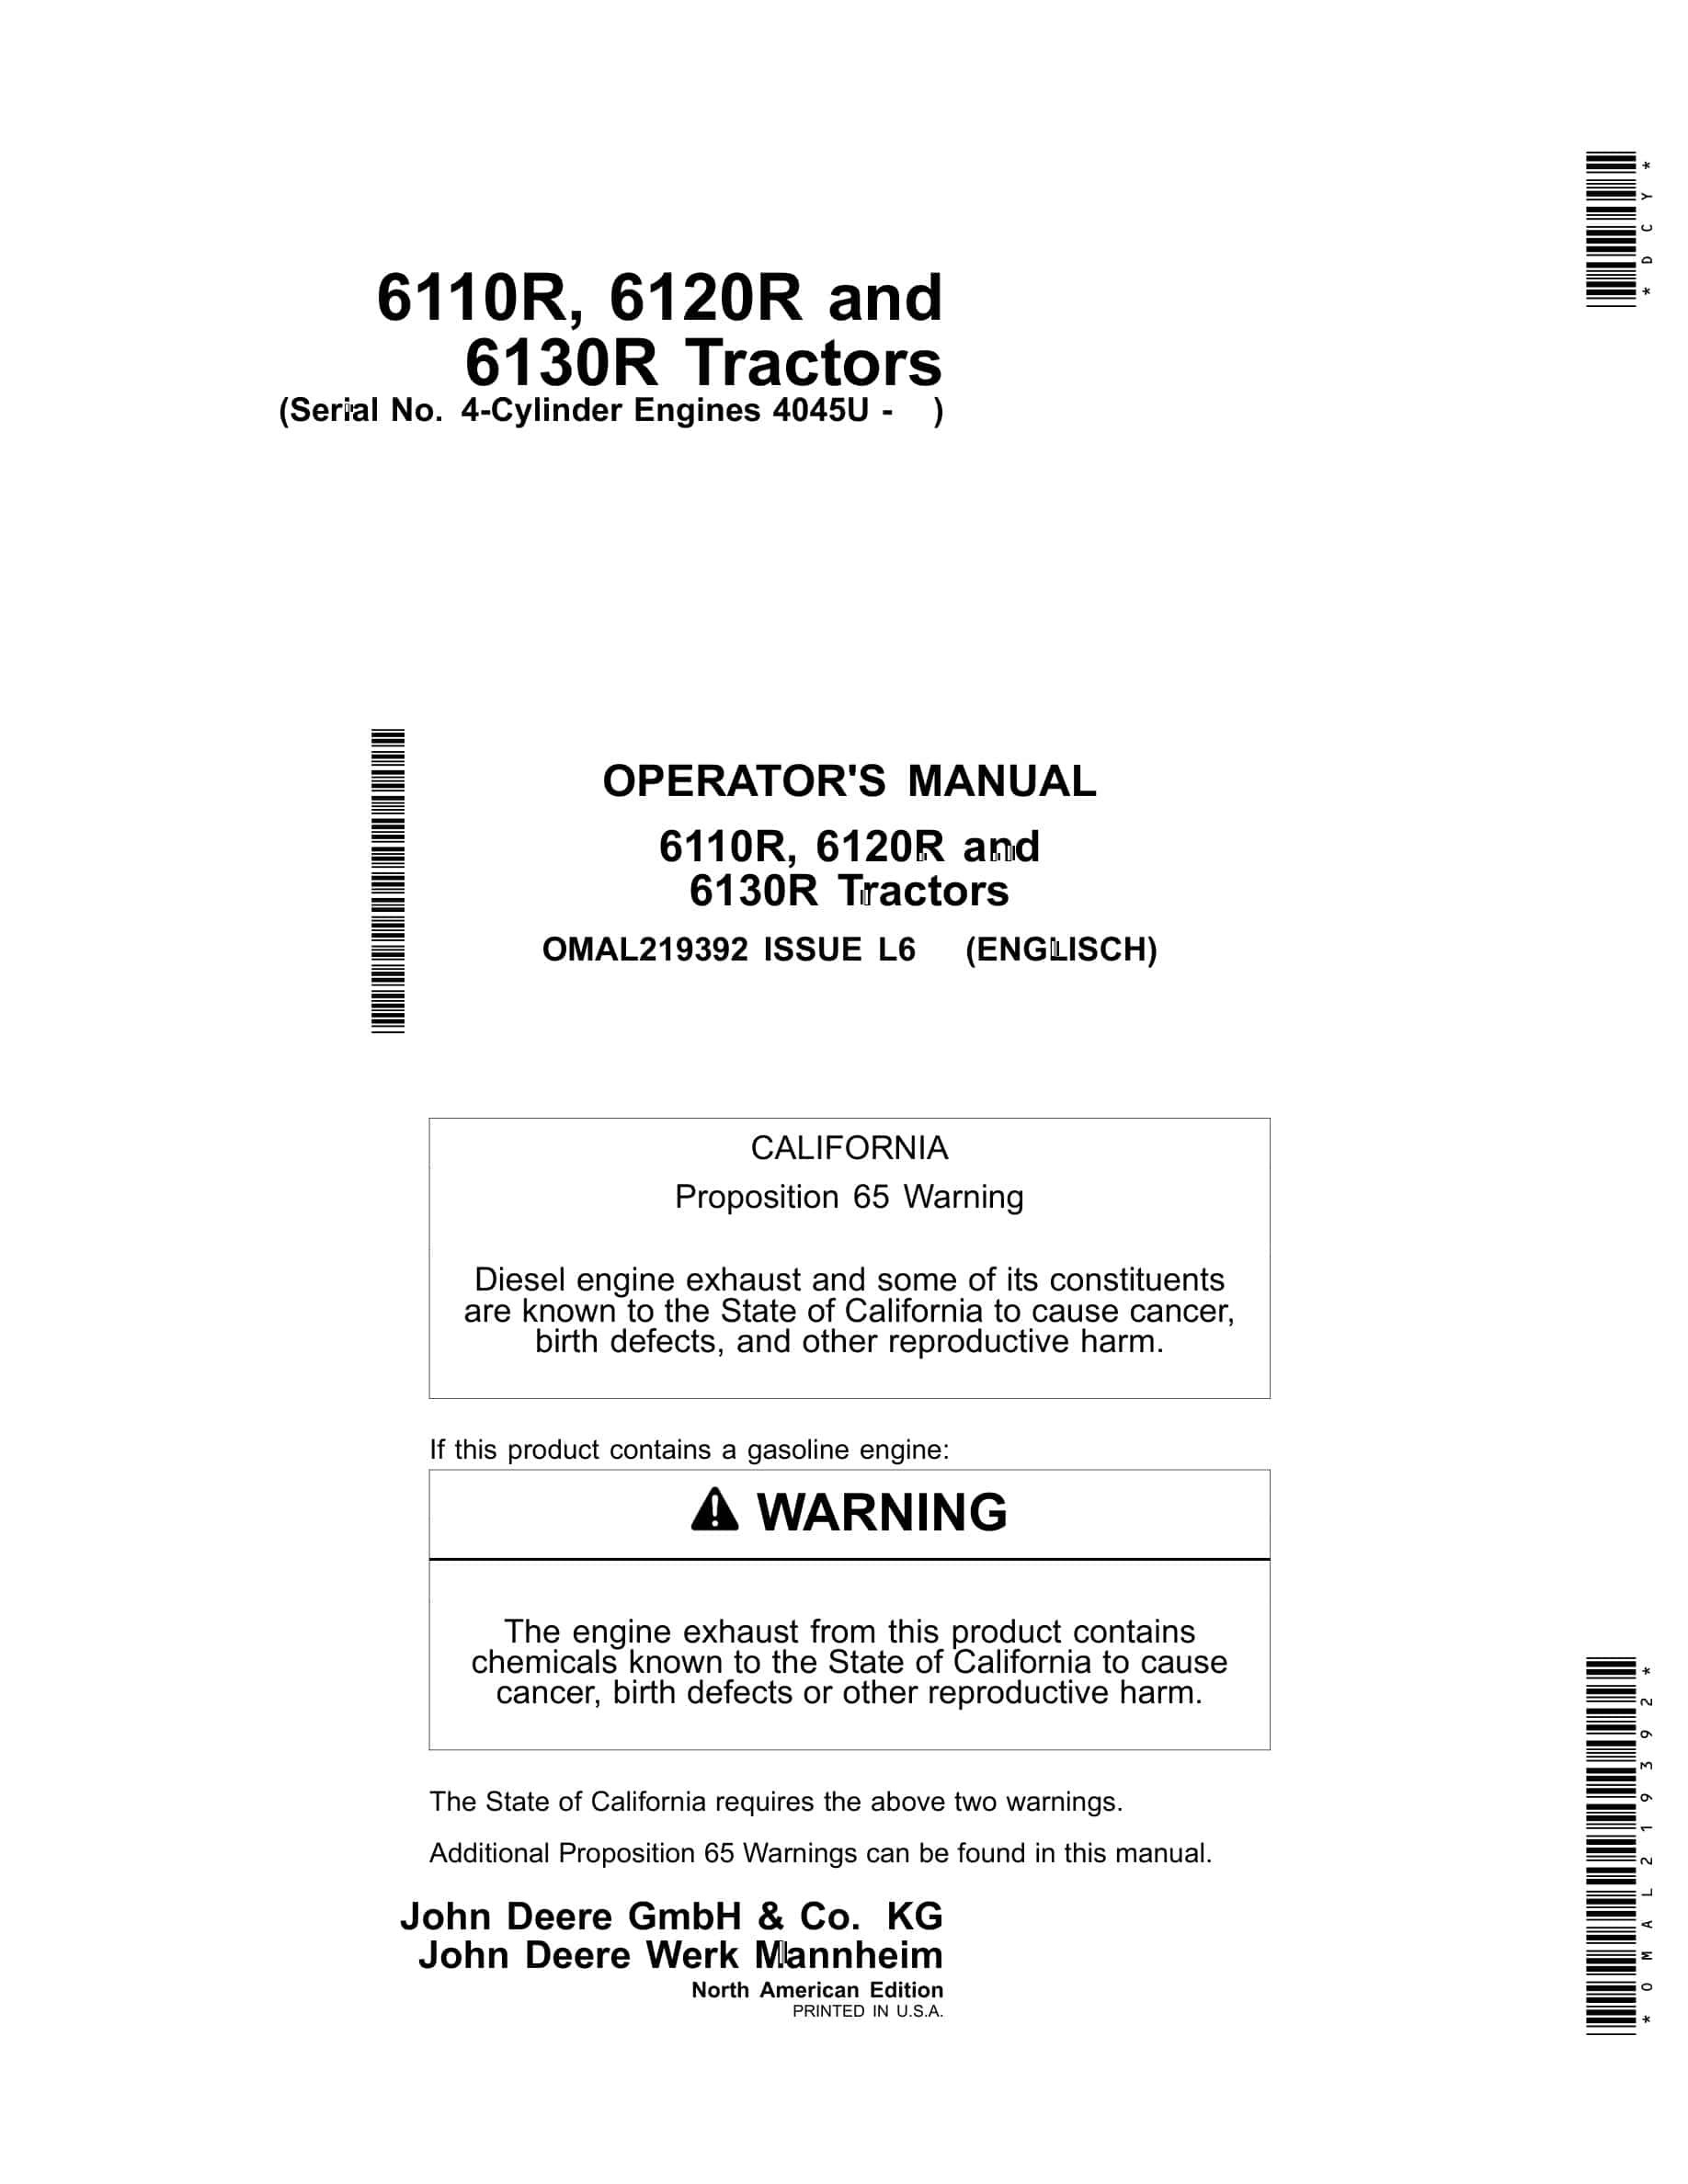 John Deere 6110R, 6120R and 6130R Tractor Operator Manual OMAL219392-1